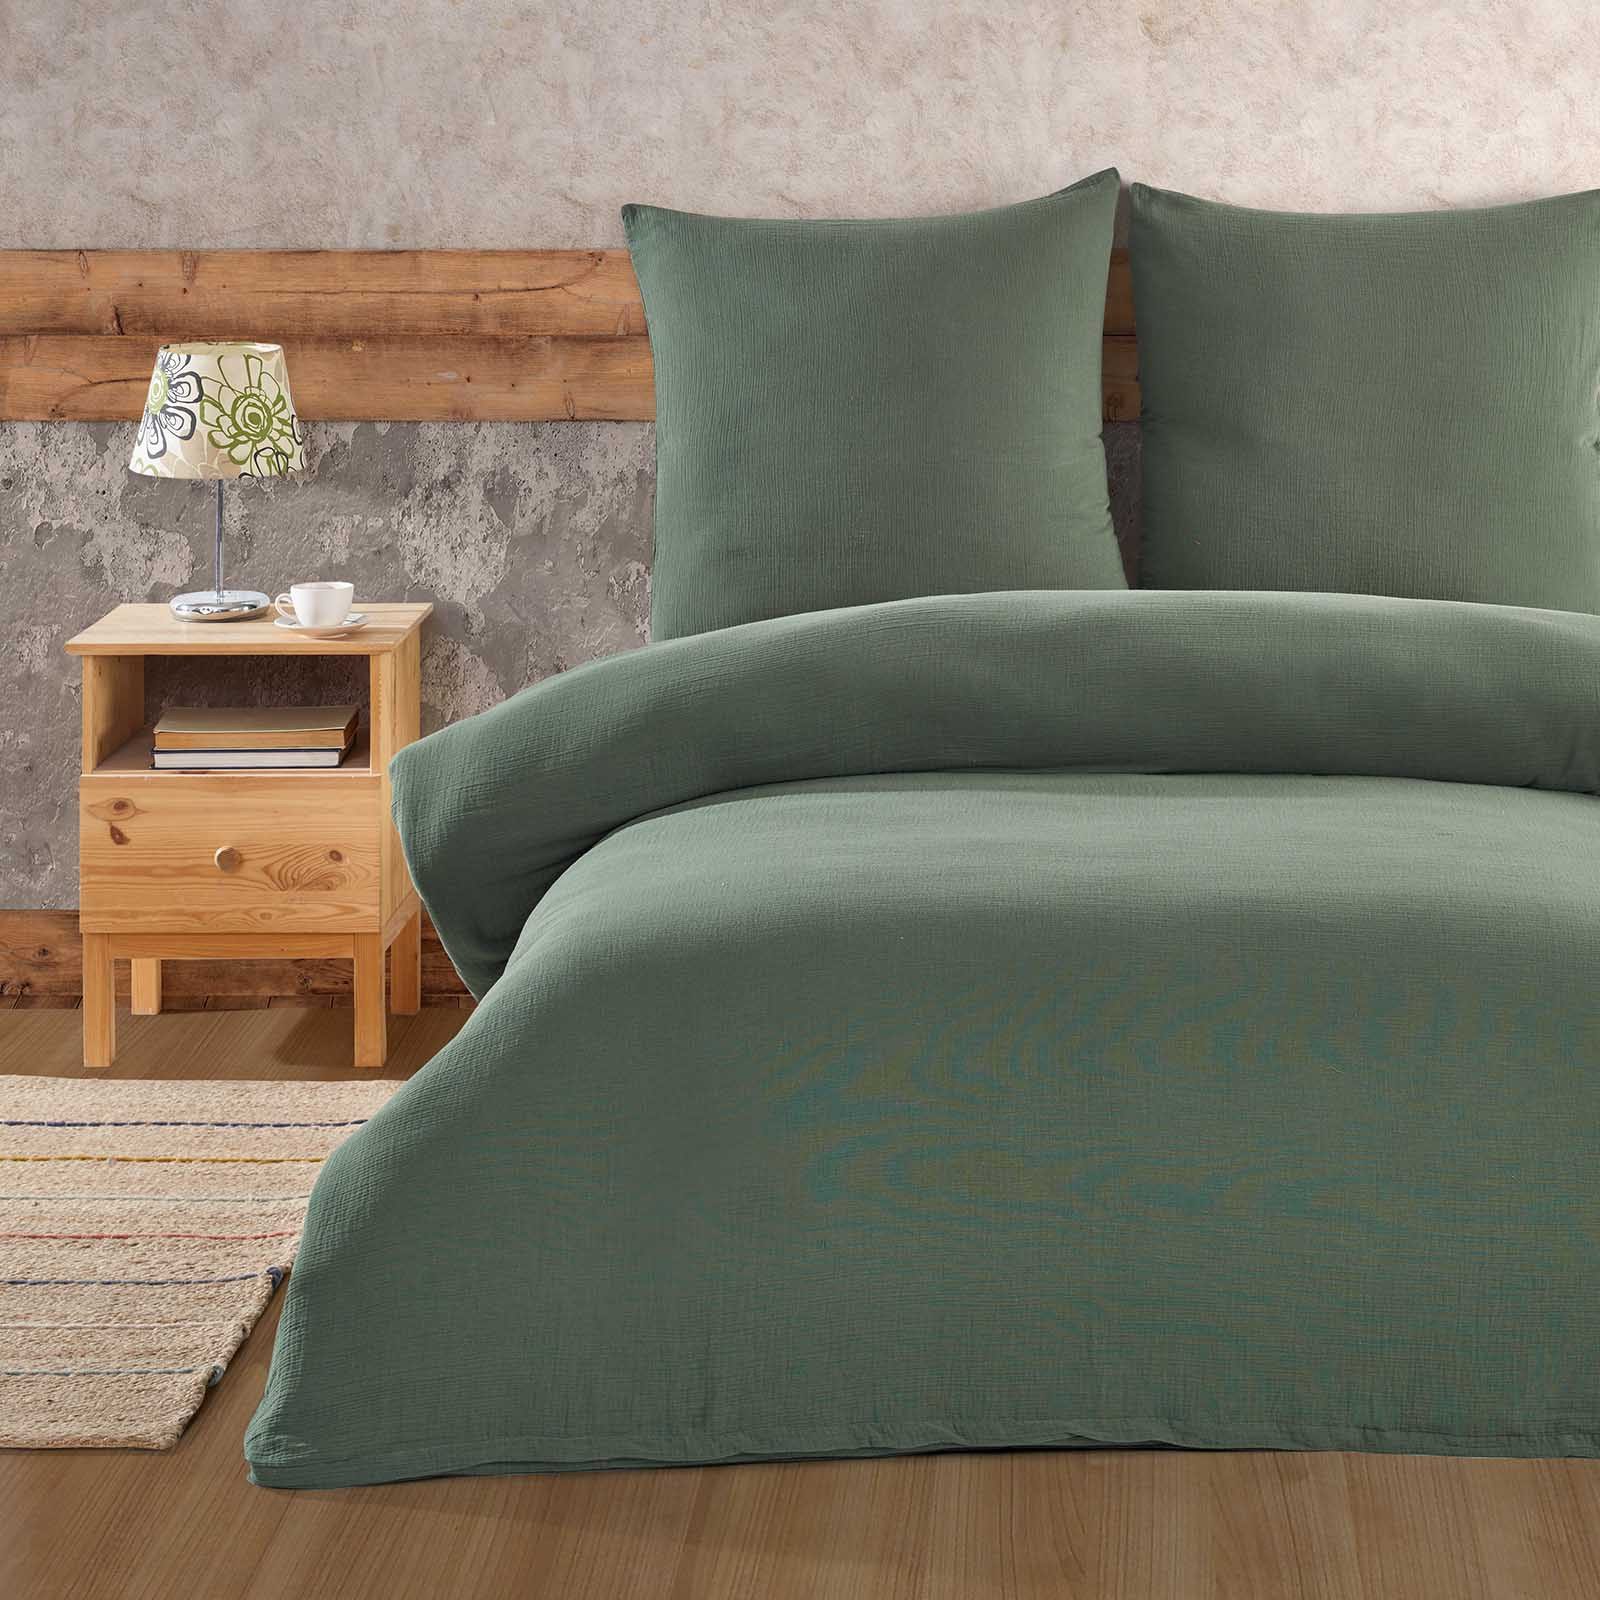 Bettwäsche Luxury, Buymax, Musselin 100% Baumwolle, 3 teilig, 200x220 cm, Bettbezug Set, Uni einfarbig, mit Reißverschluss, Grün